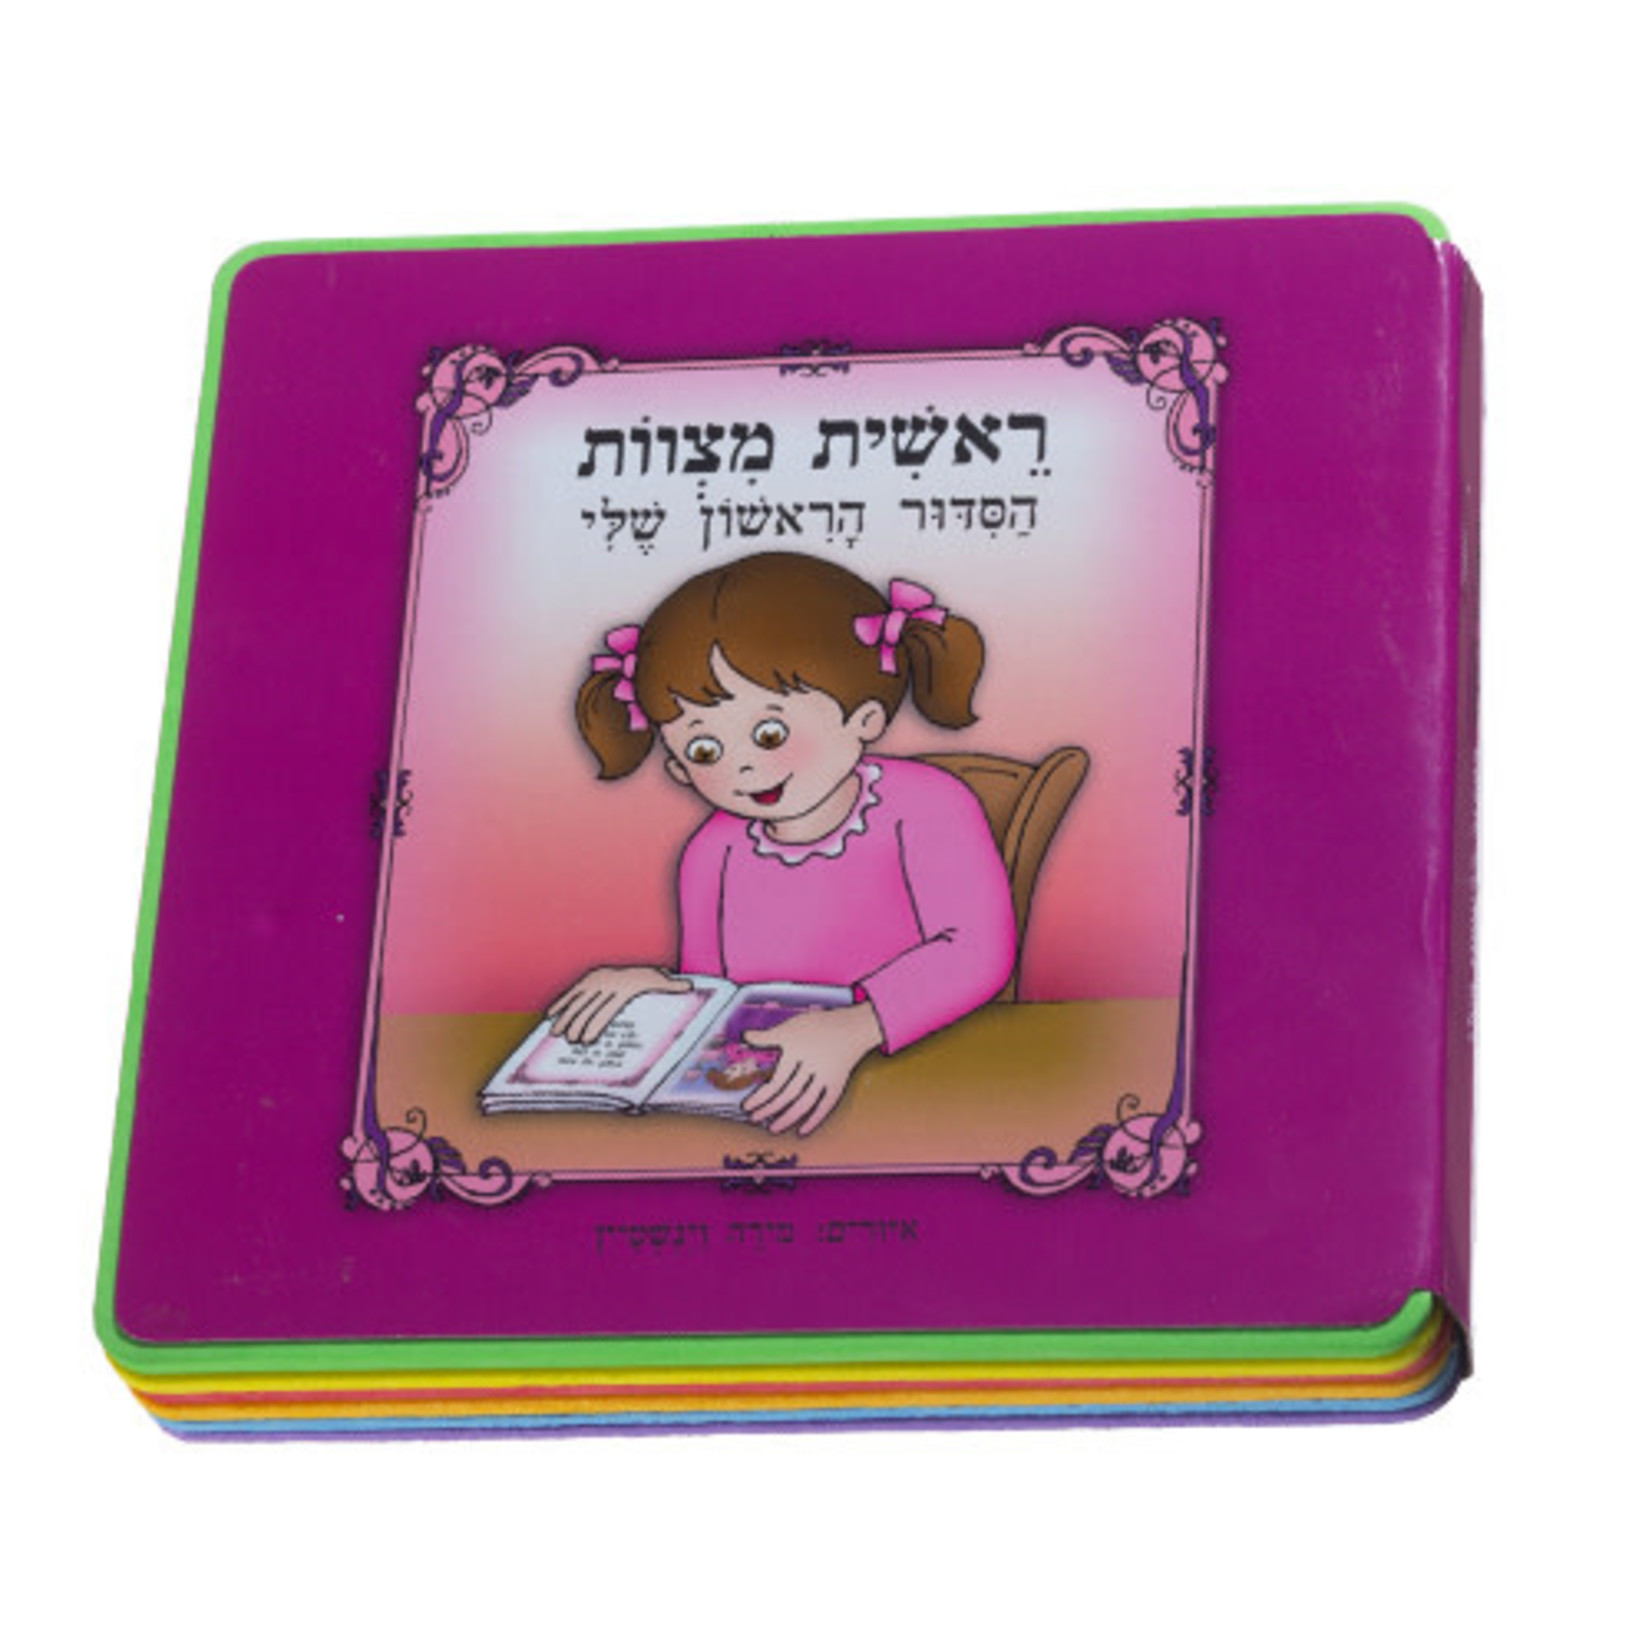 Reishit Mitzvot - My First Siddur (Hebrew), Girls'